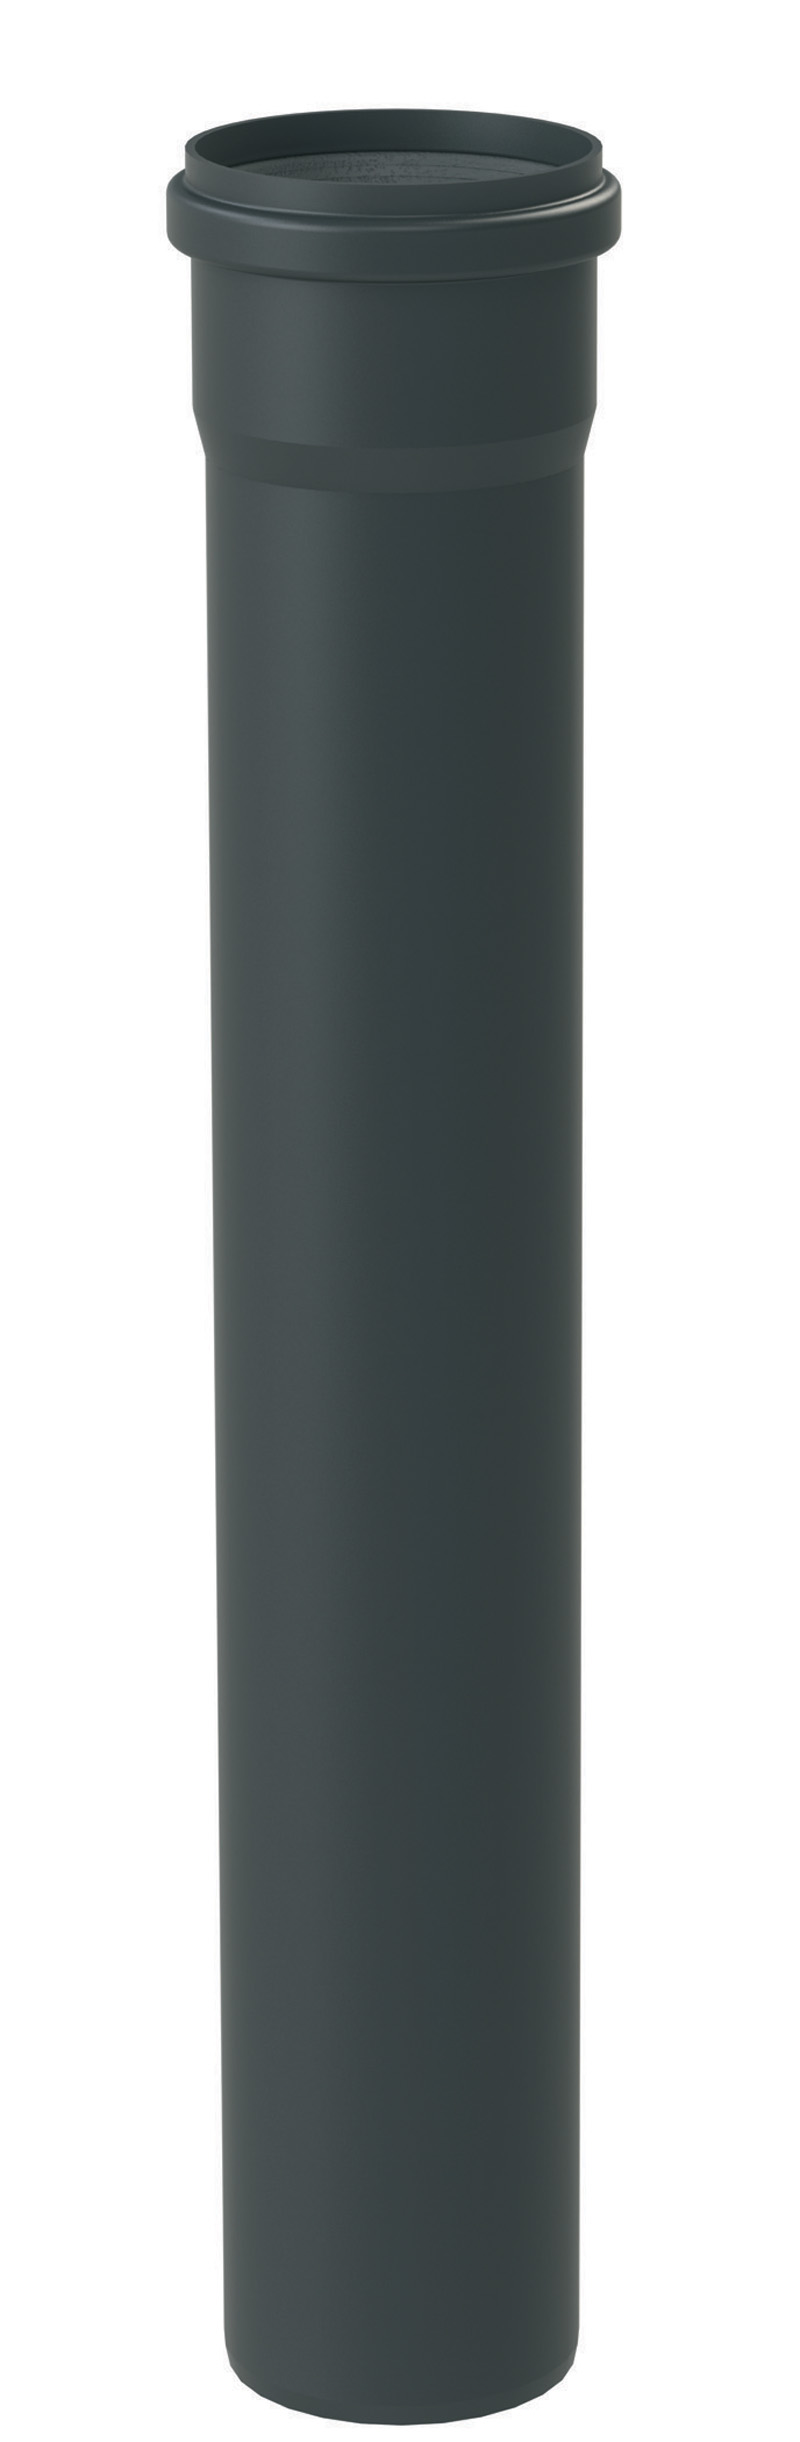 PBRM0 Szimpla Merevfalú Füstgáz-Elvezető cső 250mm Fekete (STARR) DN 80 – 200 mm